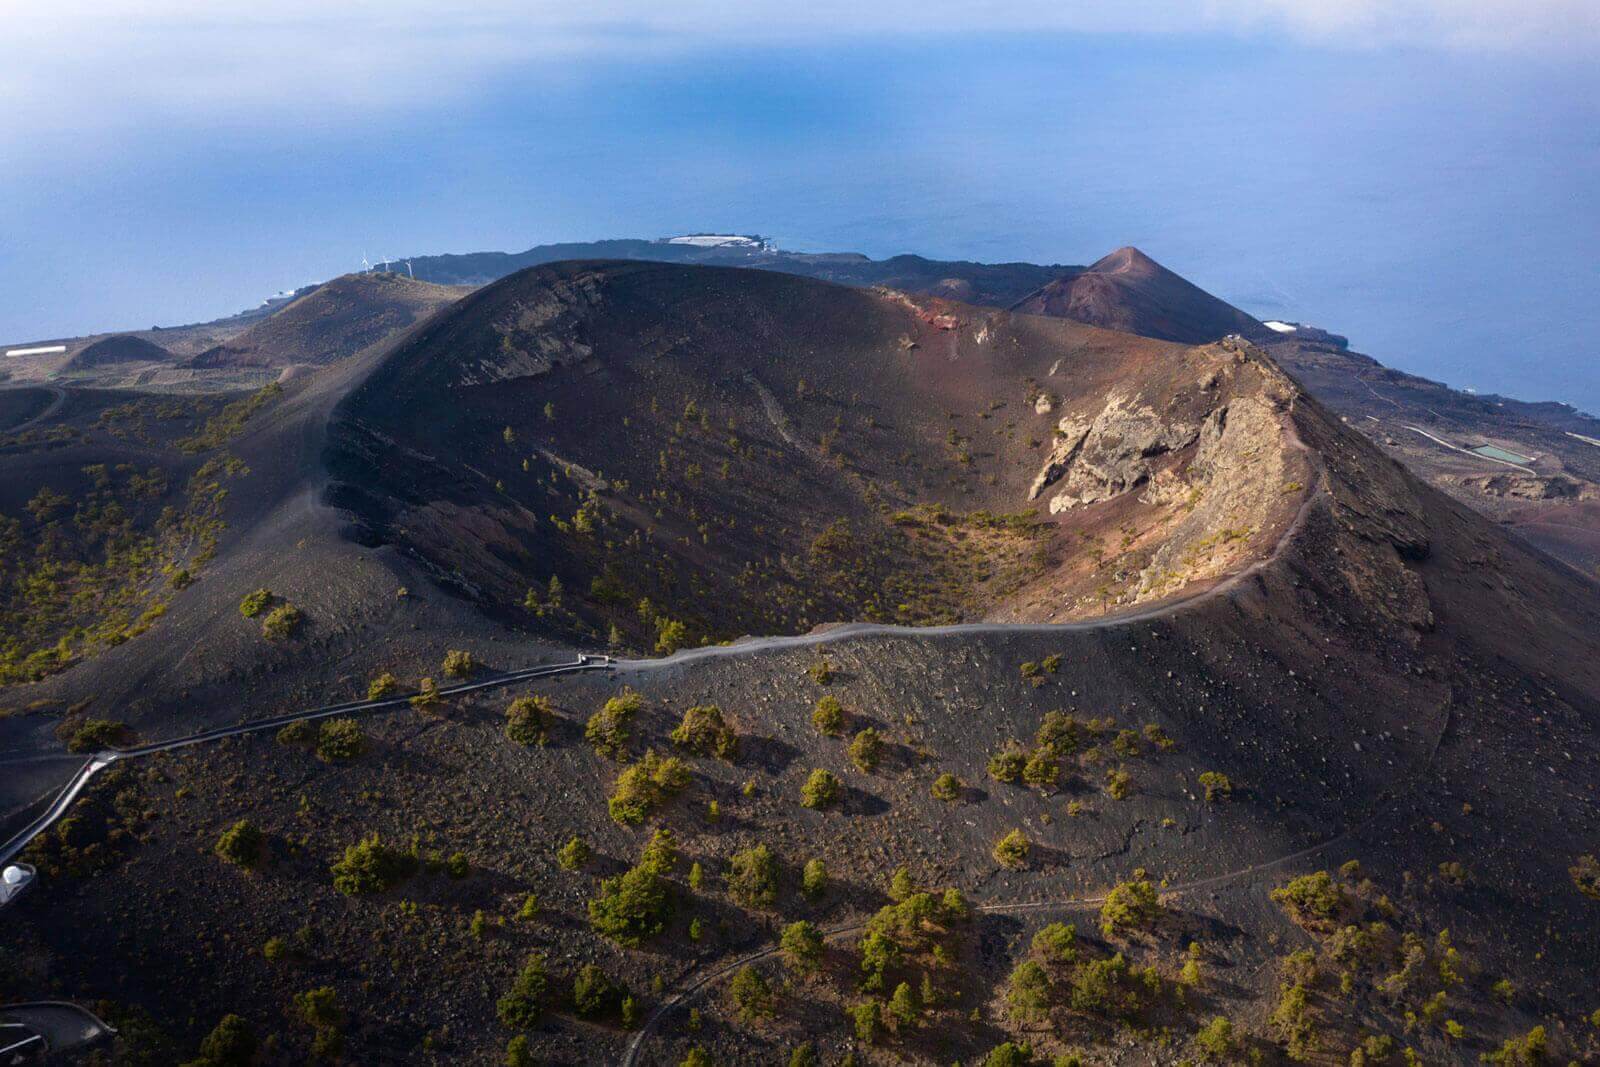 Volcán San Antonio. Fuencaliente. La Palma.